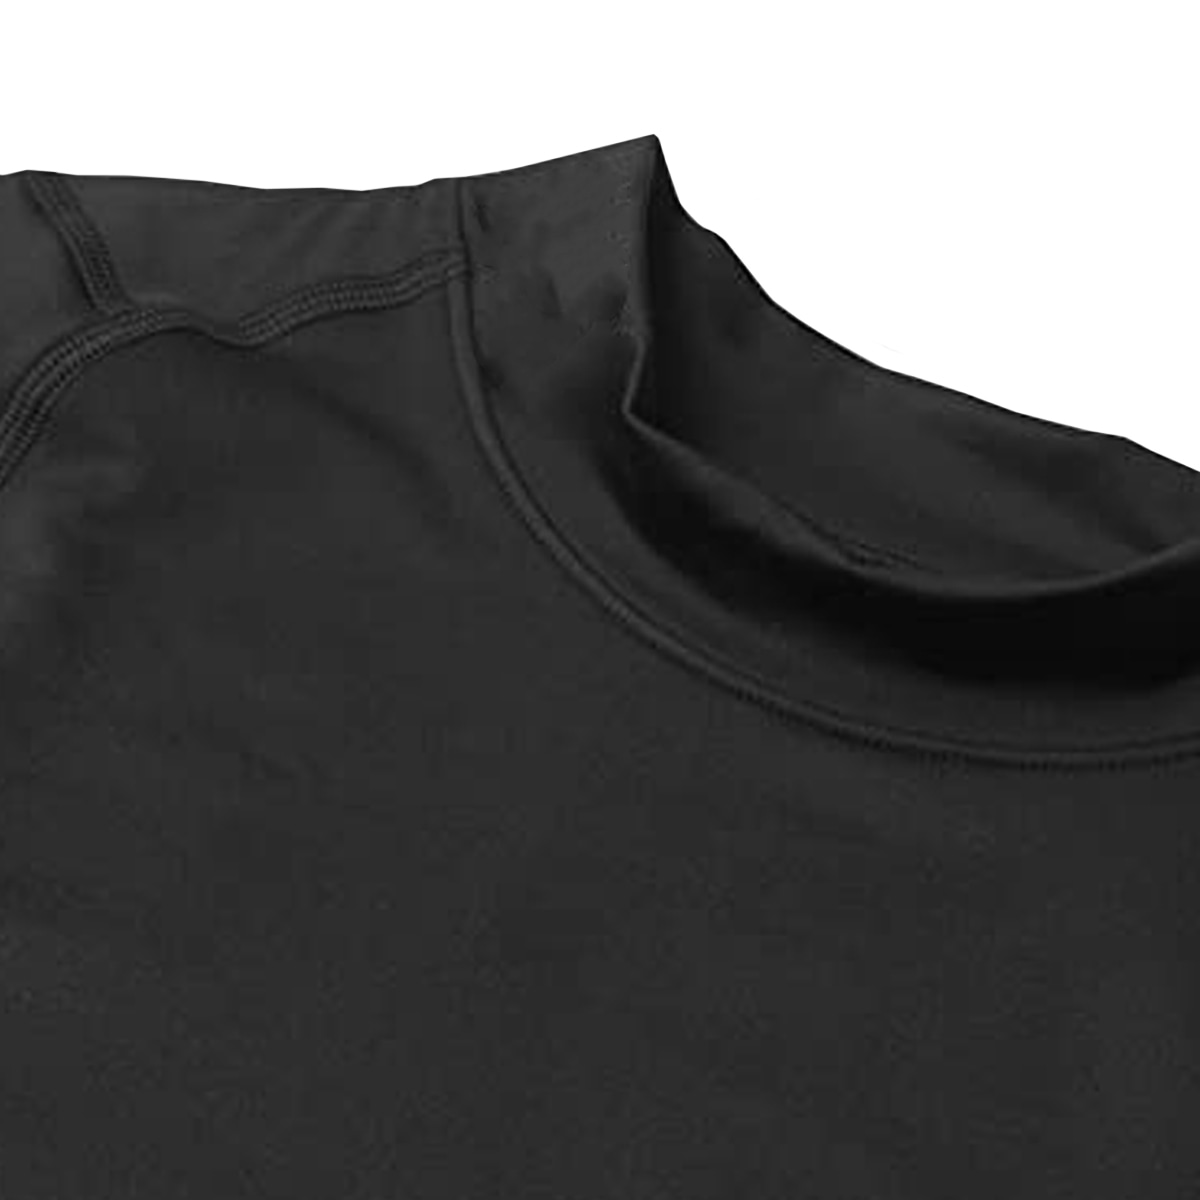 Camisetas térmicas de manga larga con cuello alto para mujer, elásticas,  ajustadas, de algodón